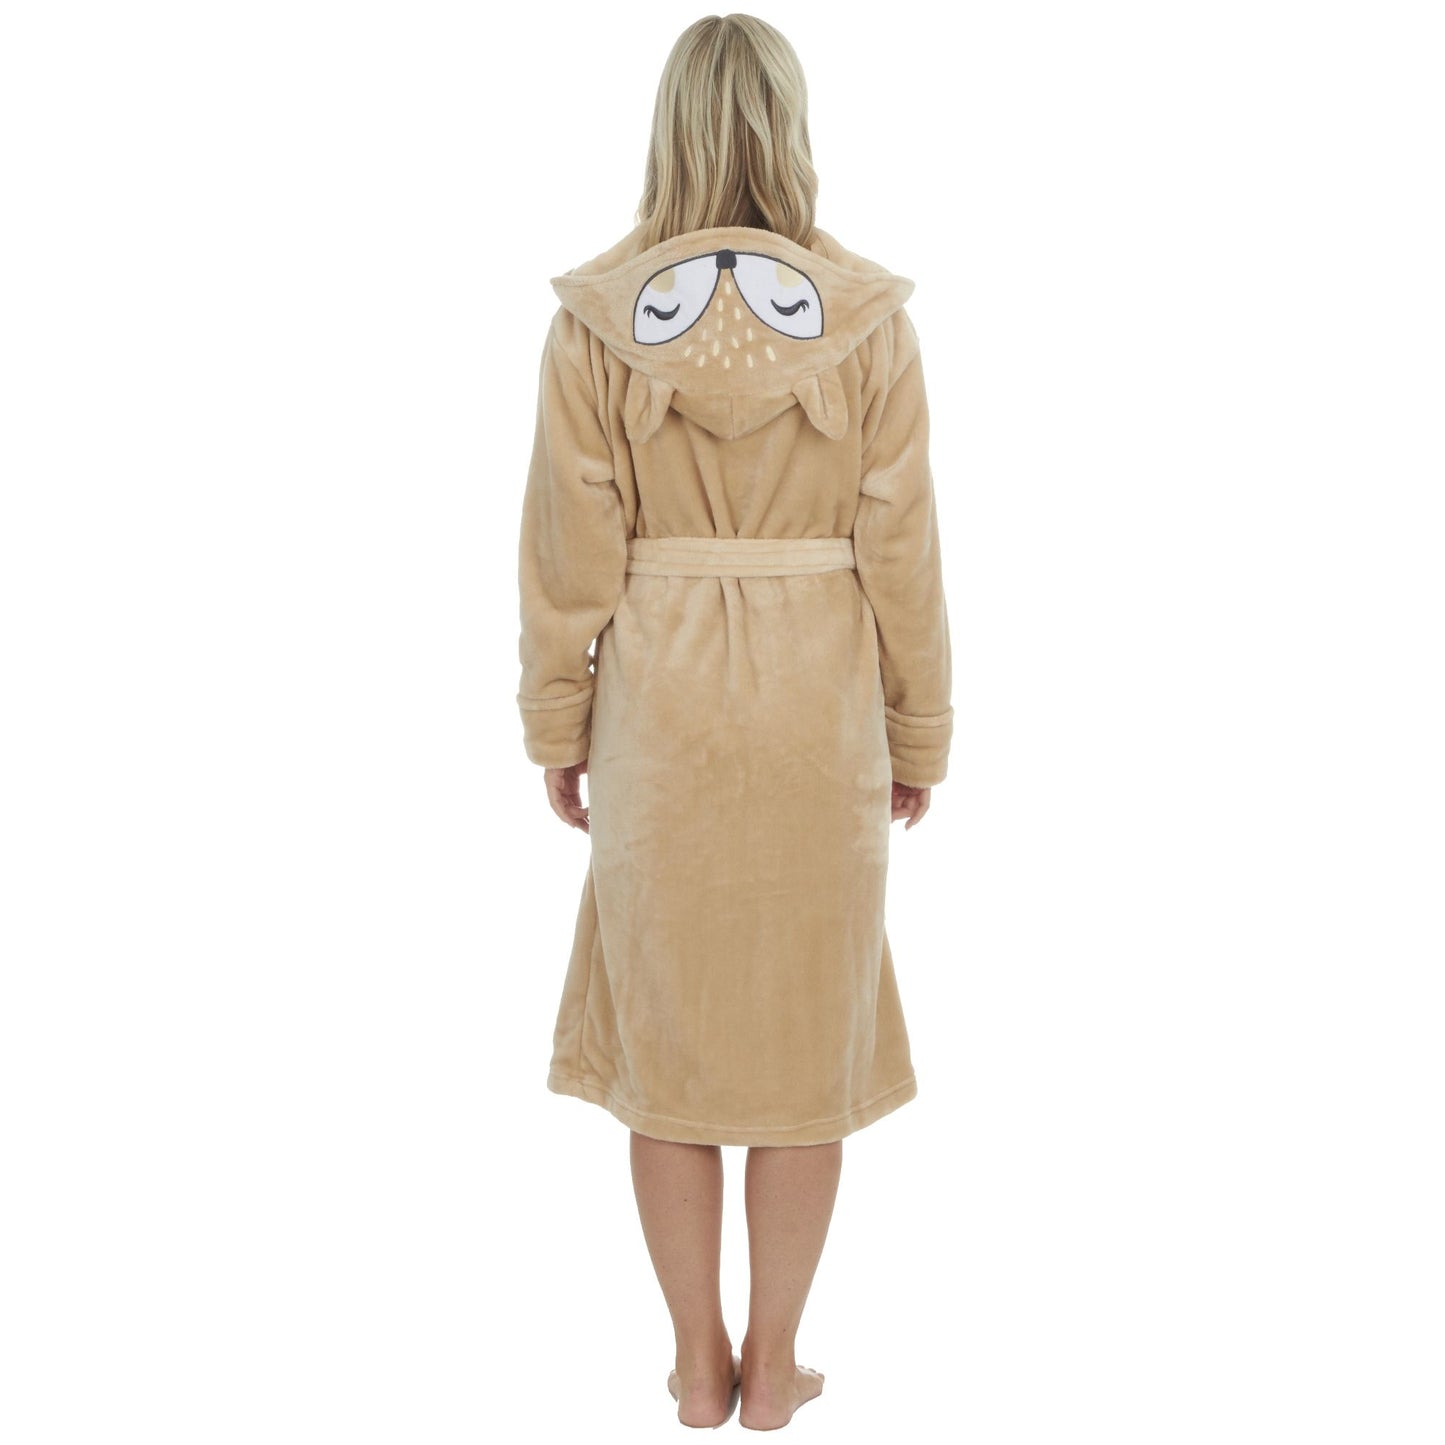 Ladies Fleece Dressing Gown with Fox Design Hood - S-XL